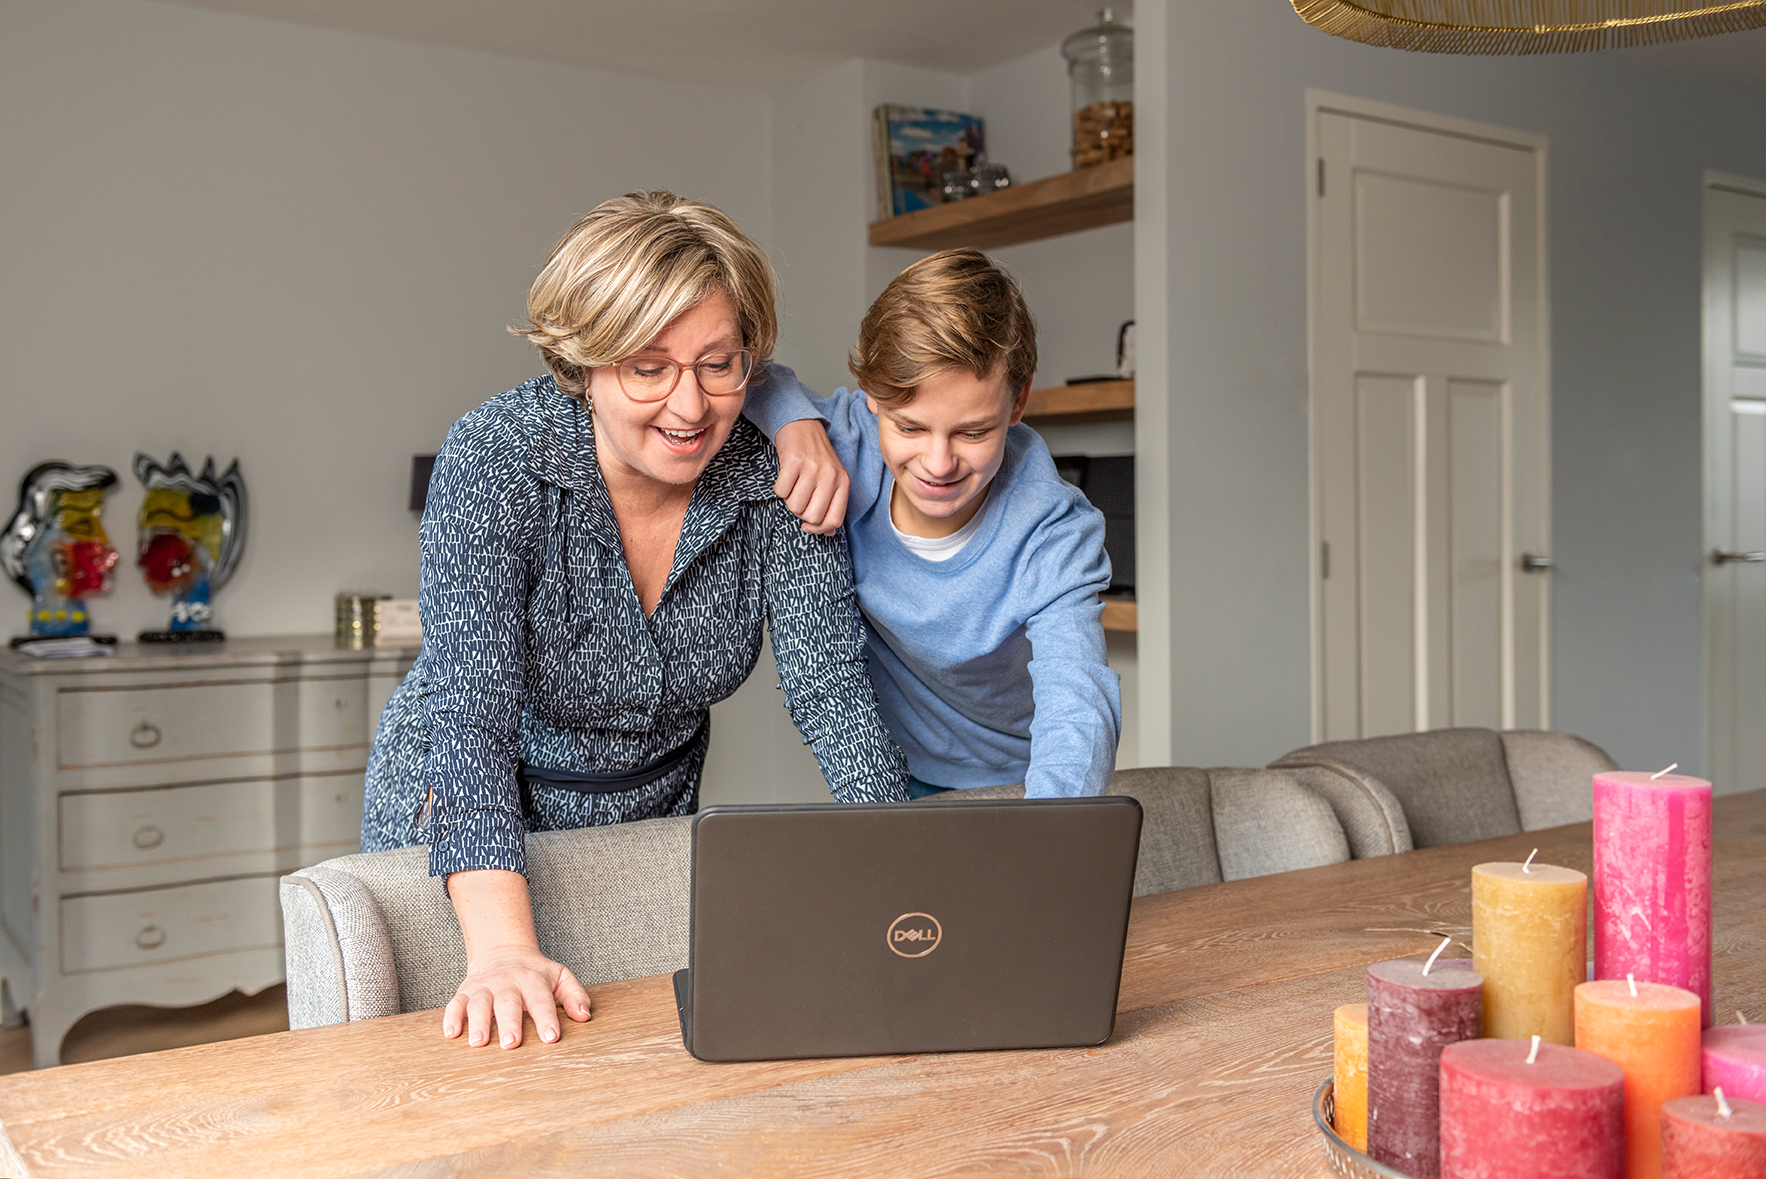 Timo laat iets op de laptop zien aan zijn moeder; ze moeten er allebei om lachen.